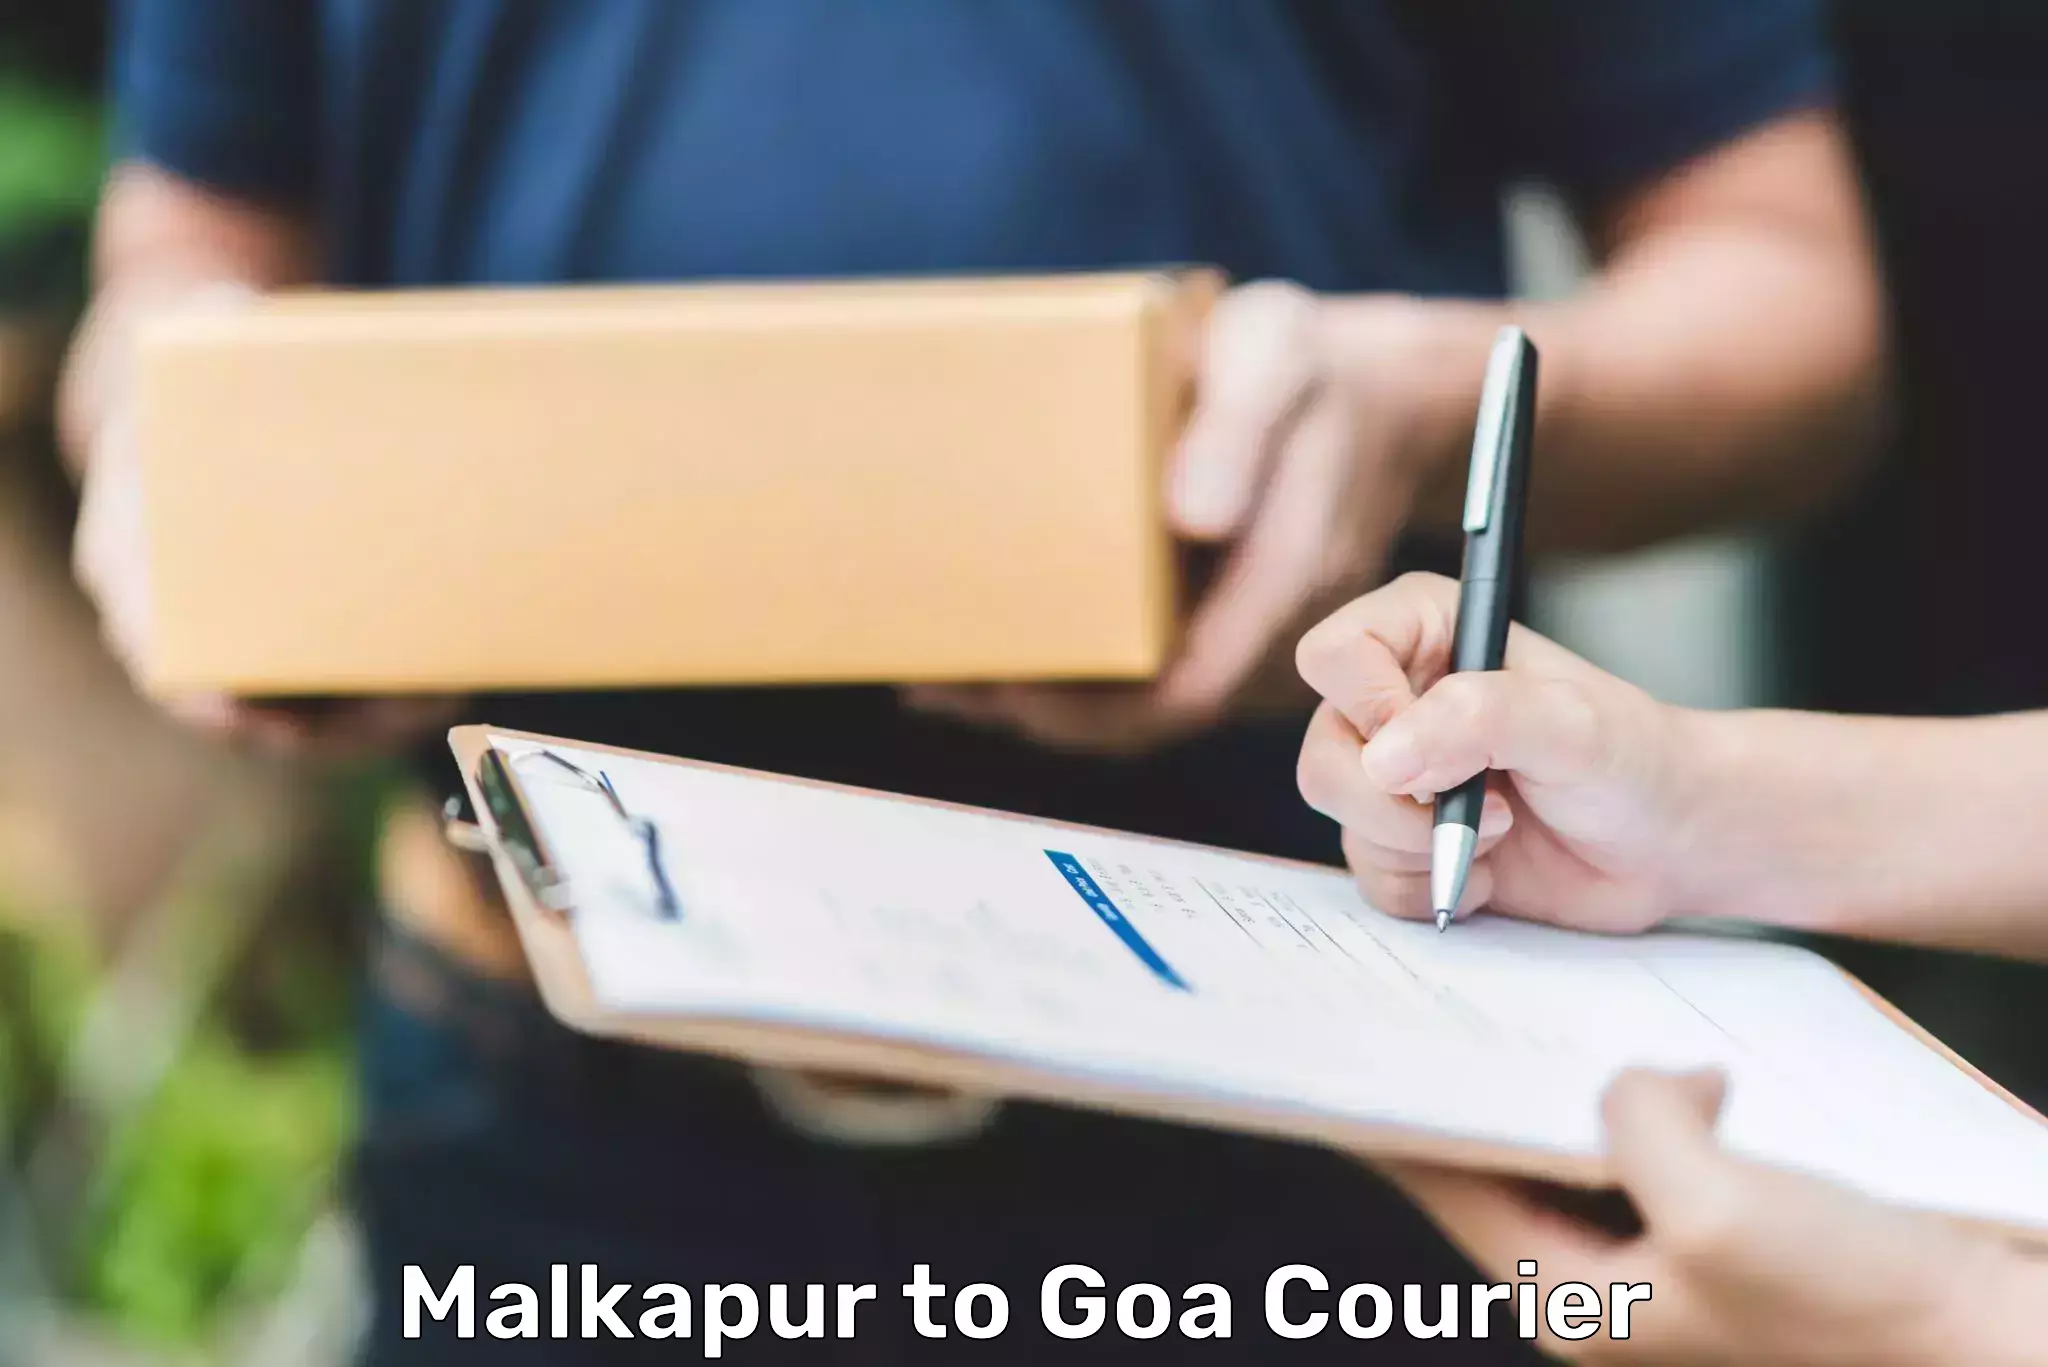 Efficient logistics management in Malkapur to Goa